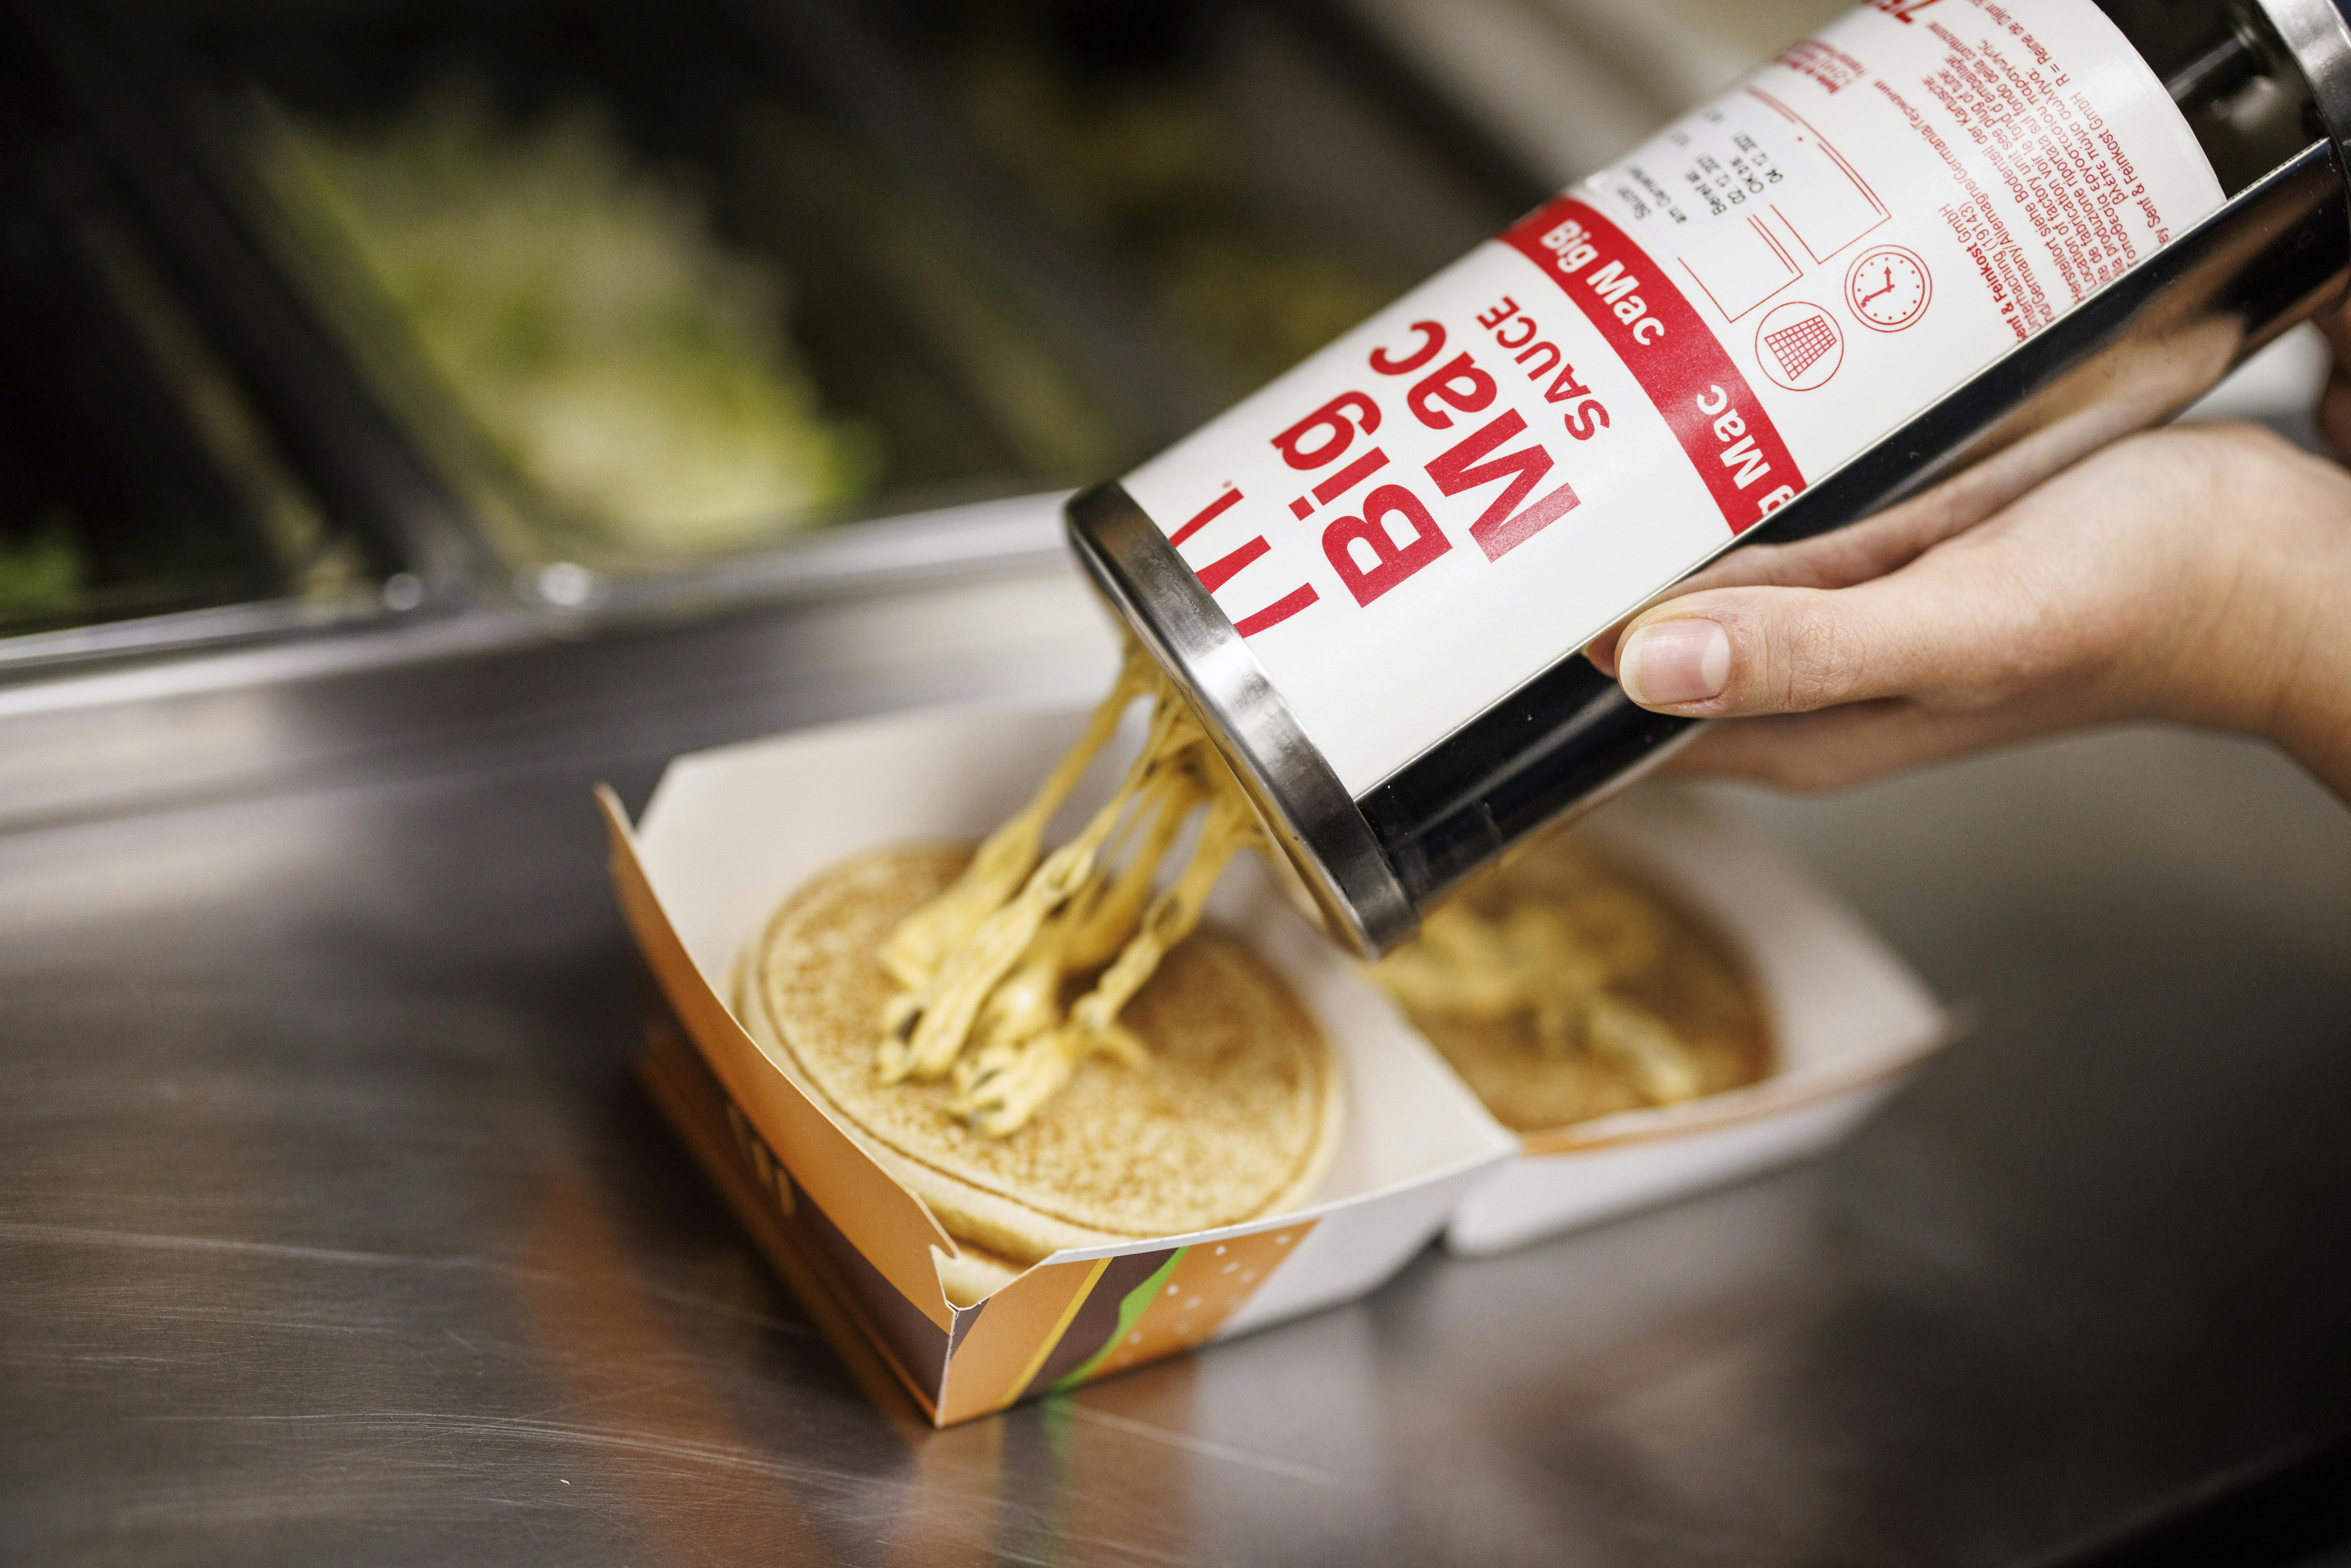 Den ikoniske Big Mac-sauce kan nu snart fås som dyppelse. nbsp;